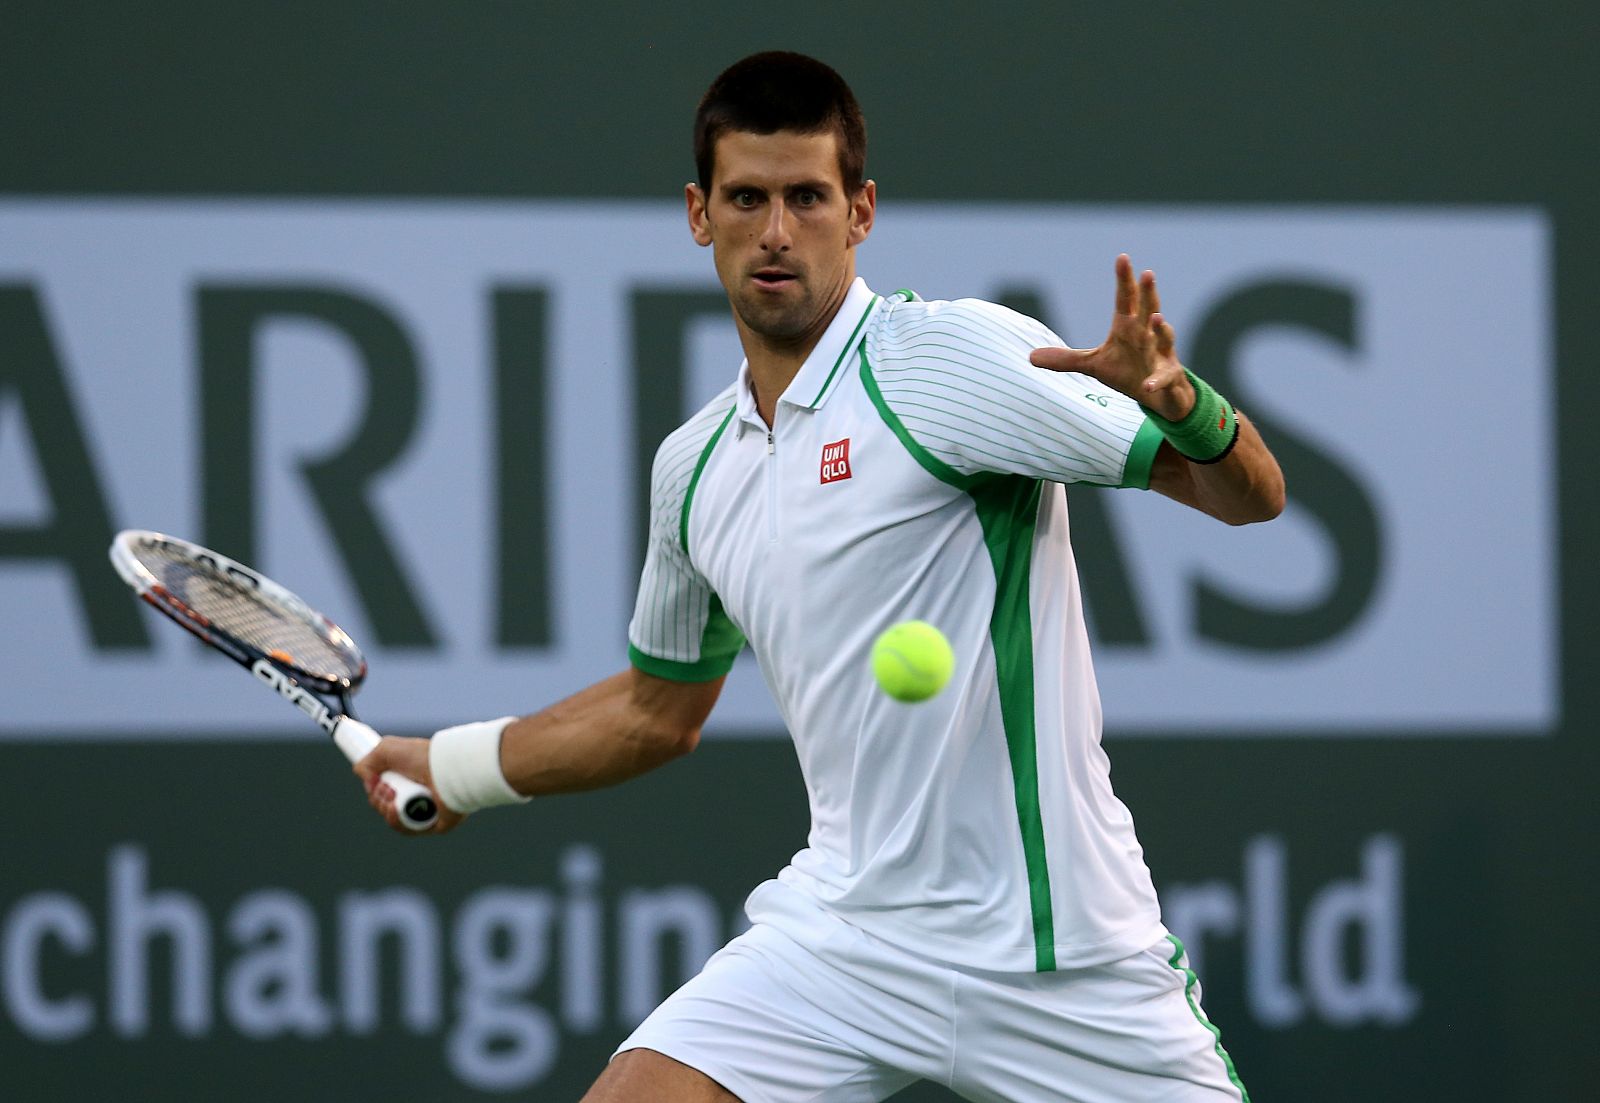 El serbio Novak Djokovic en su partido contra Fabio Fognini en Indian Wells